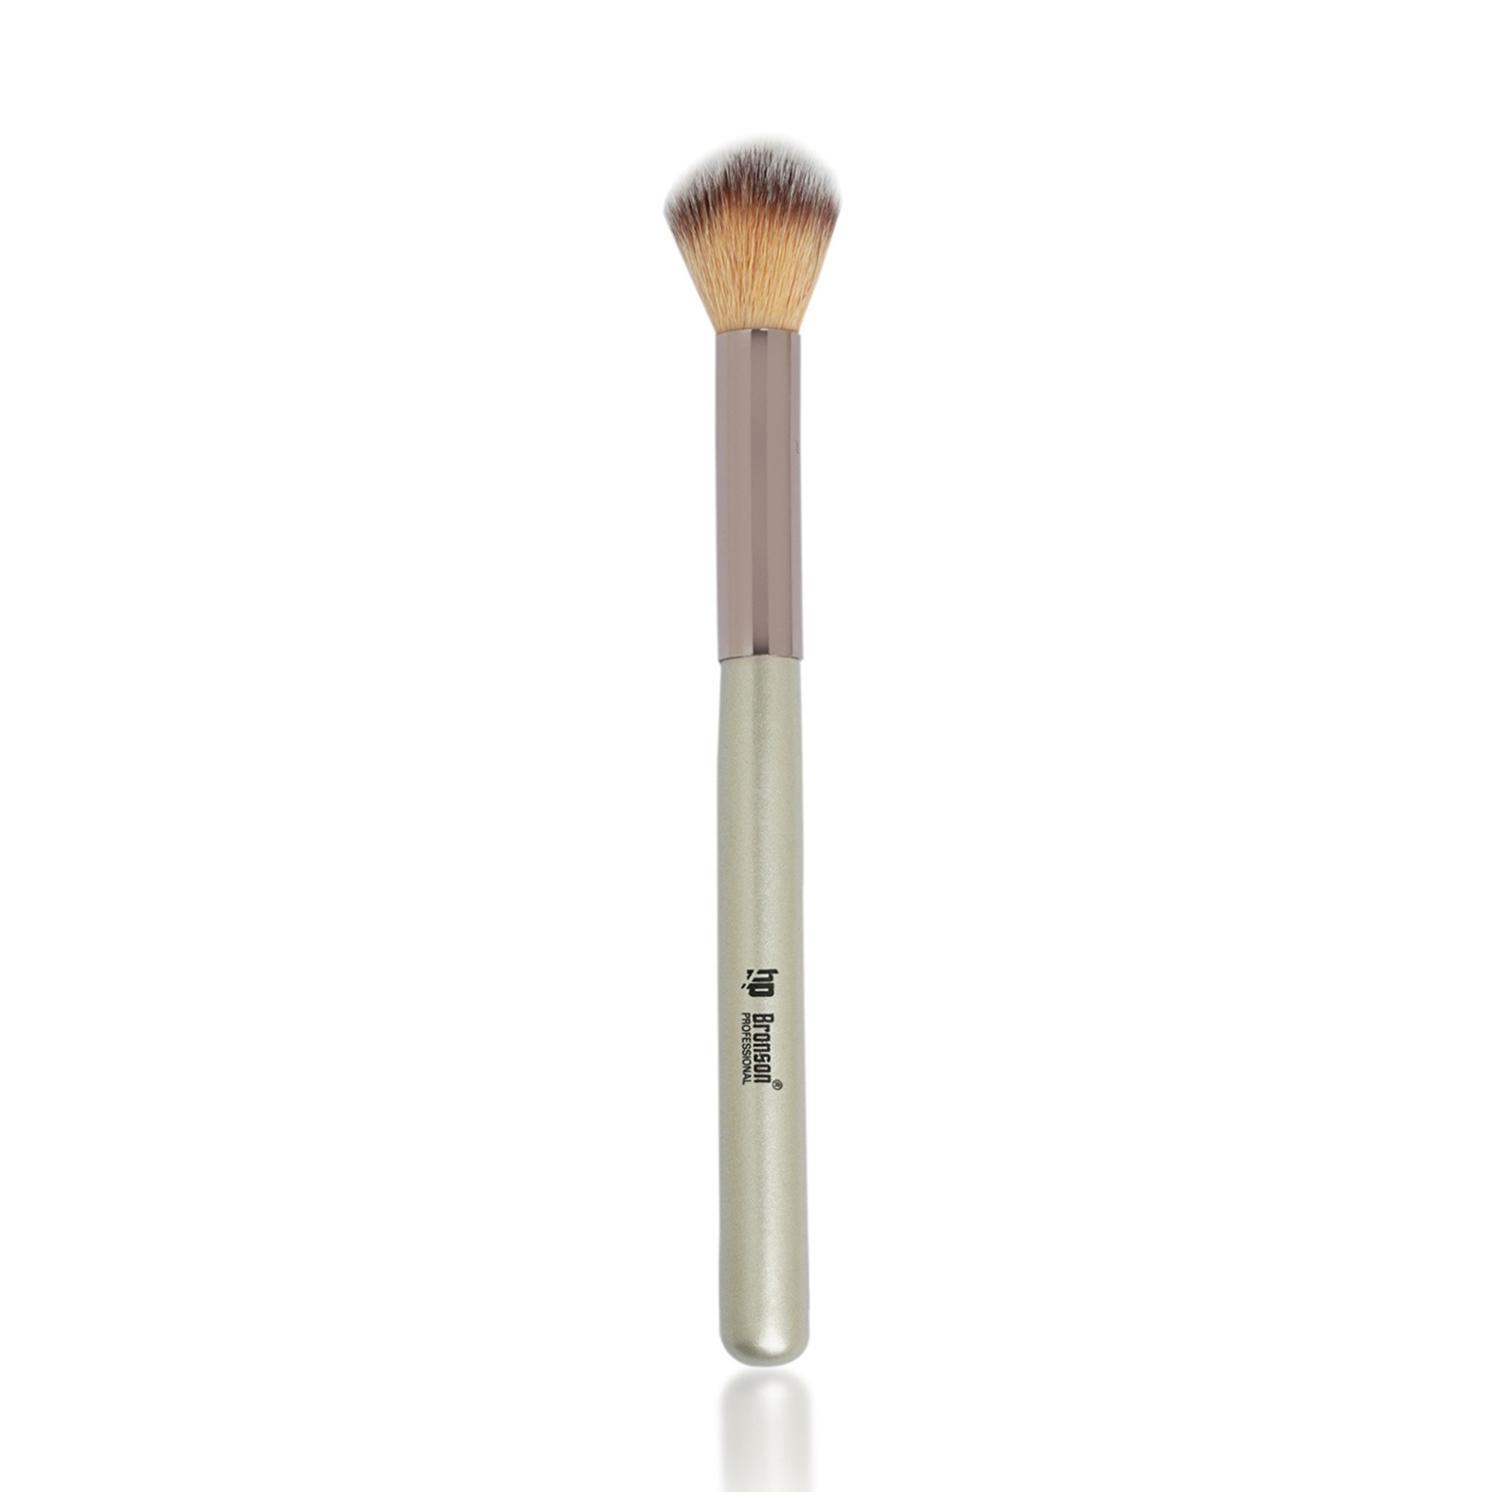 Bronson Professional | Bronson Professional Classic Powder Makeup Brush - Silver, Pink